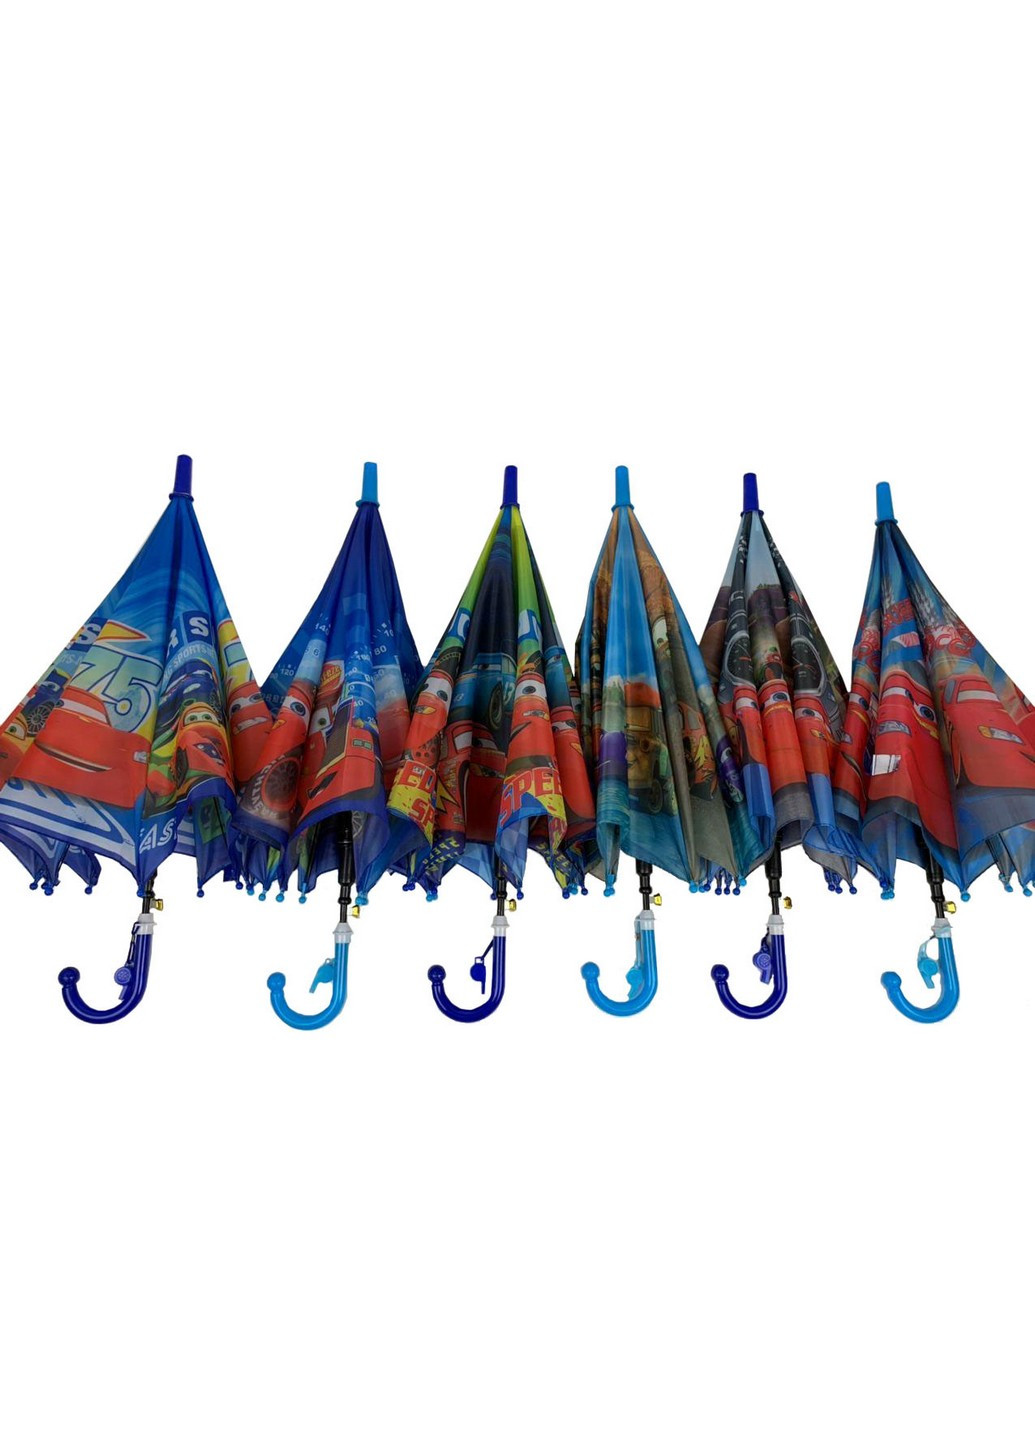 Зонт-трость детский 88 см Paolo Rossi (258676516)